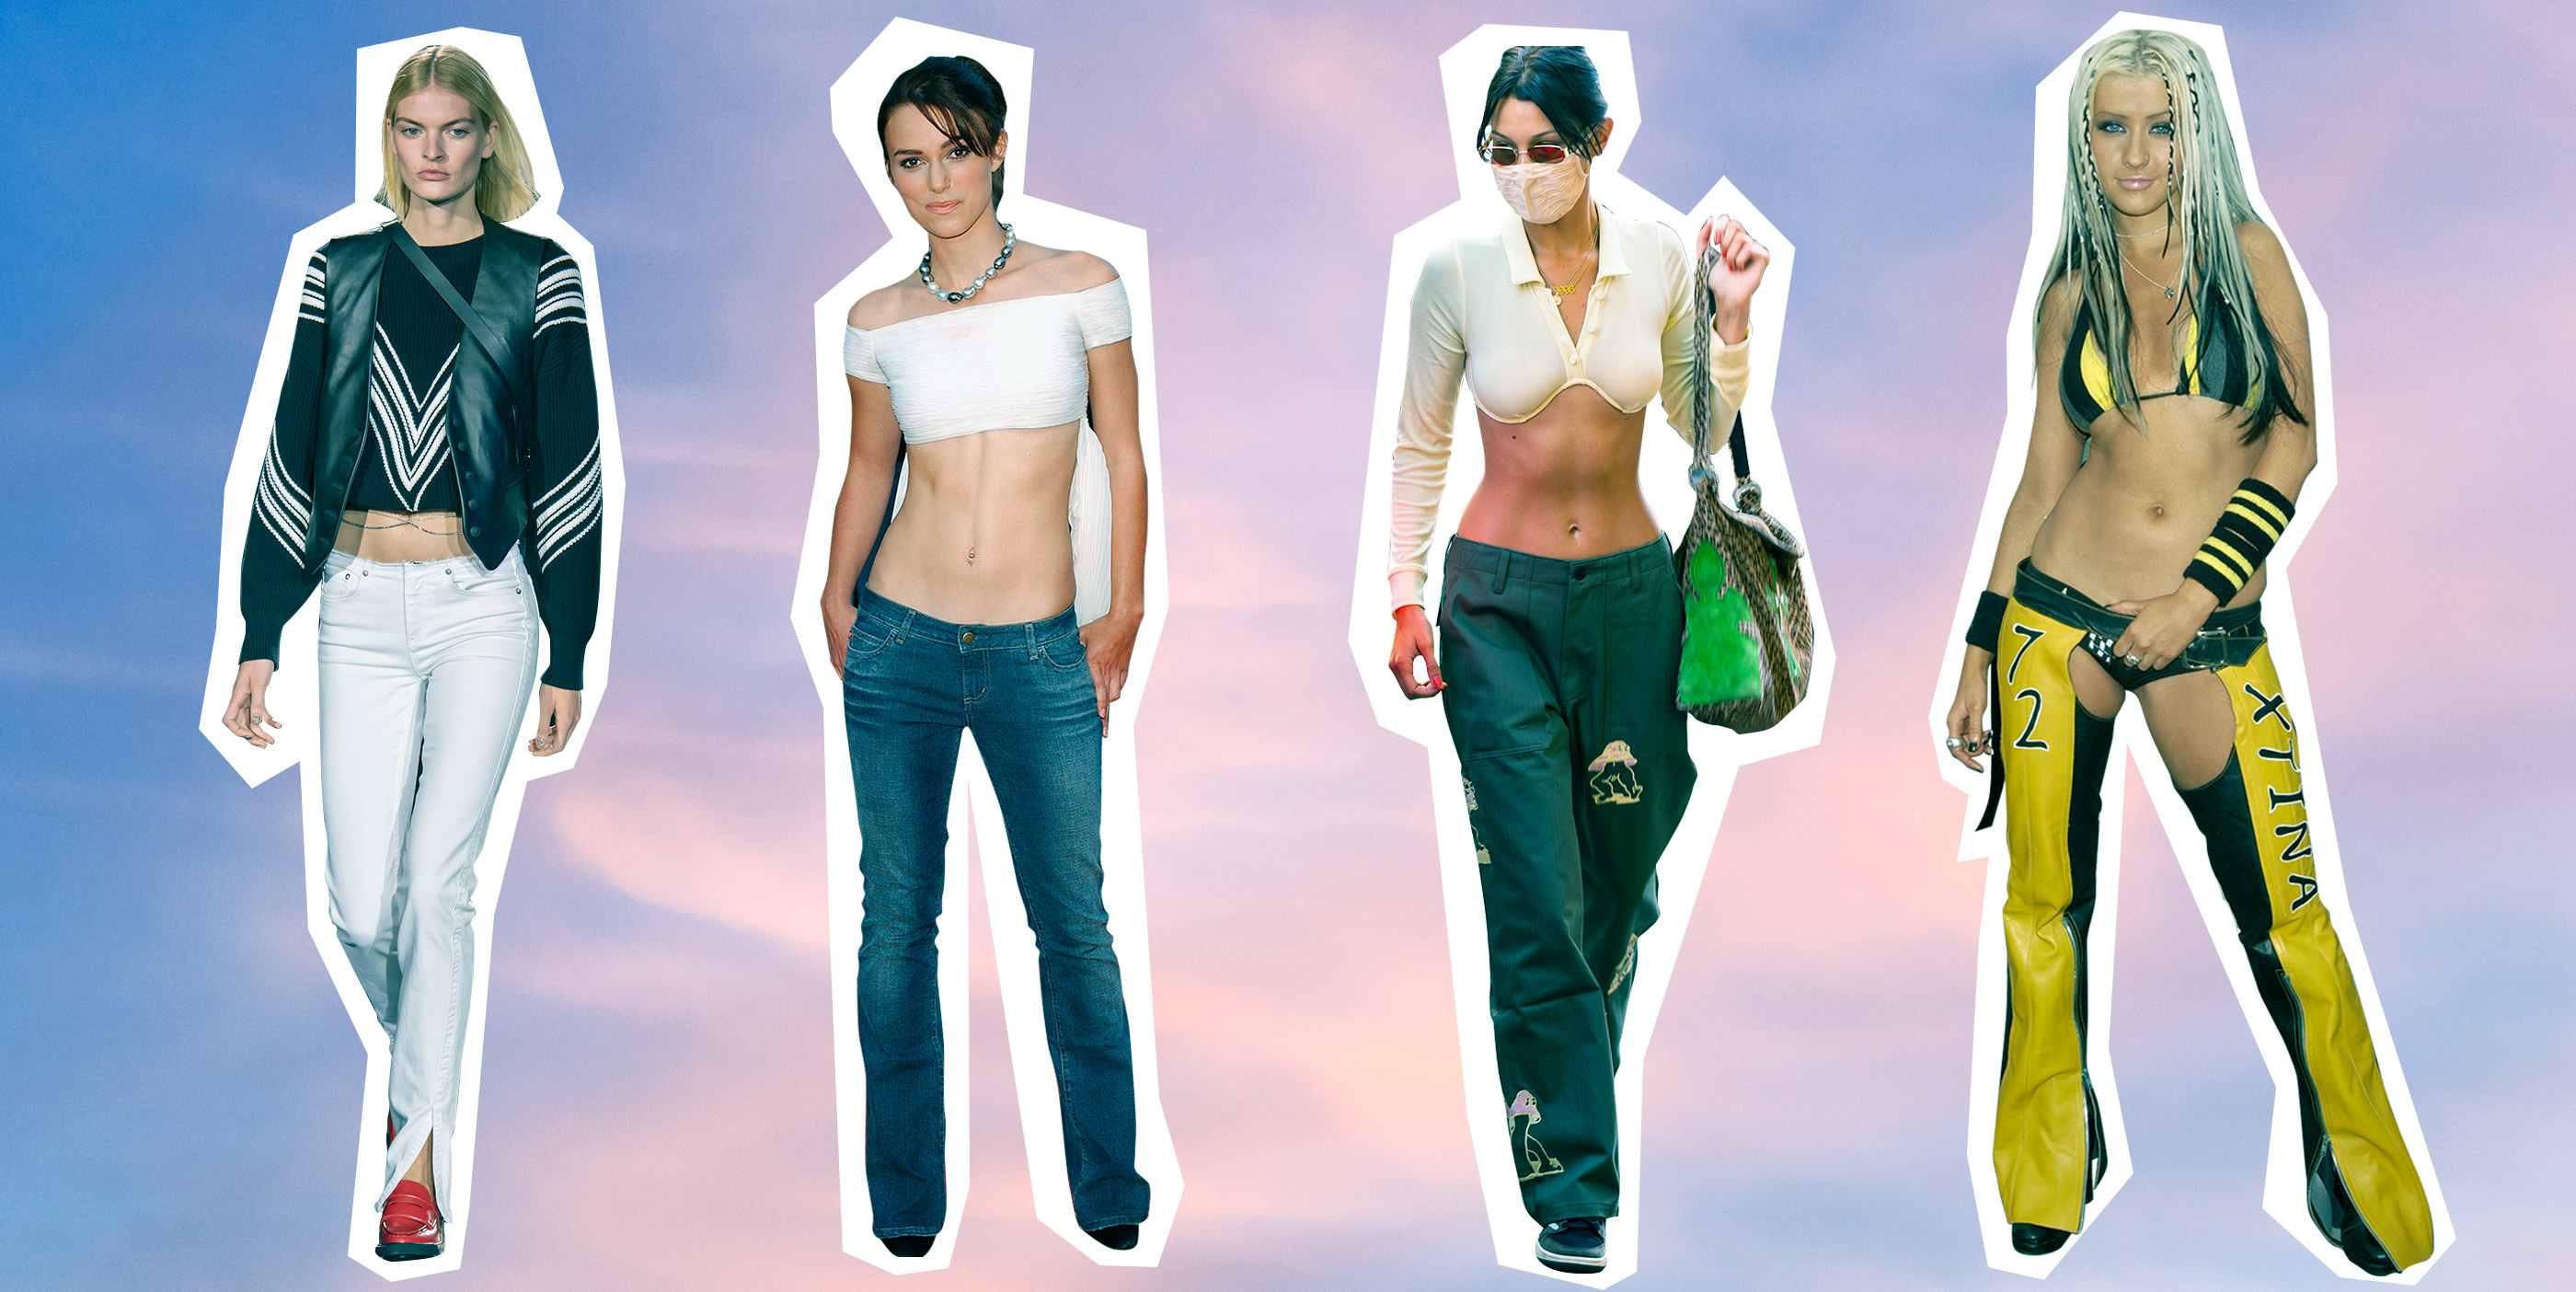 Establecimiento Patentar verdad Pantalón de tiro bajo, el regreso de la prenda de los 2000 que produce  escalofríos | Moda | S Moda EL PAÍS